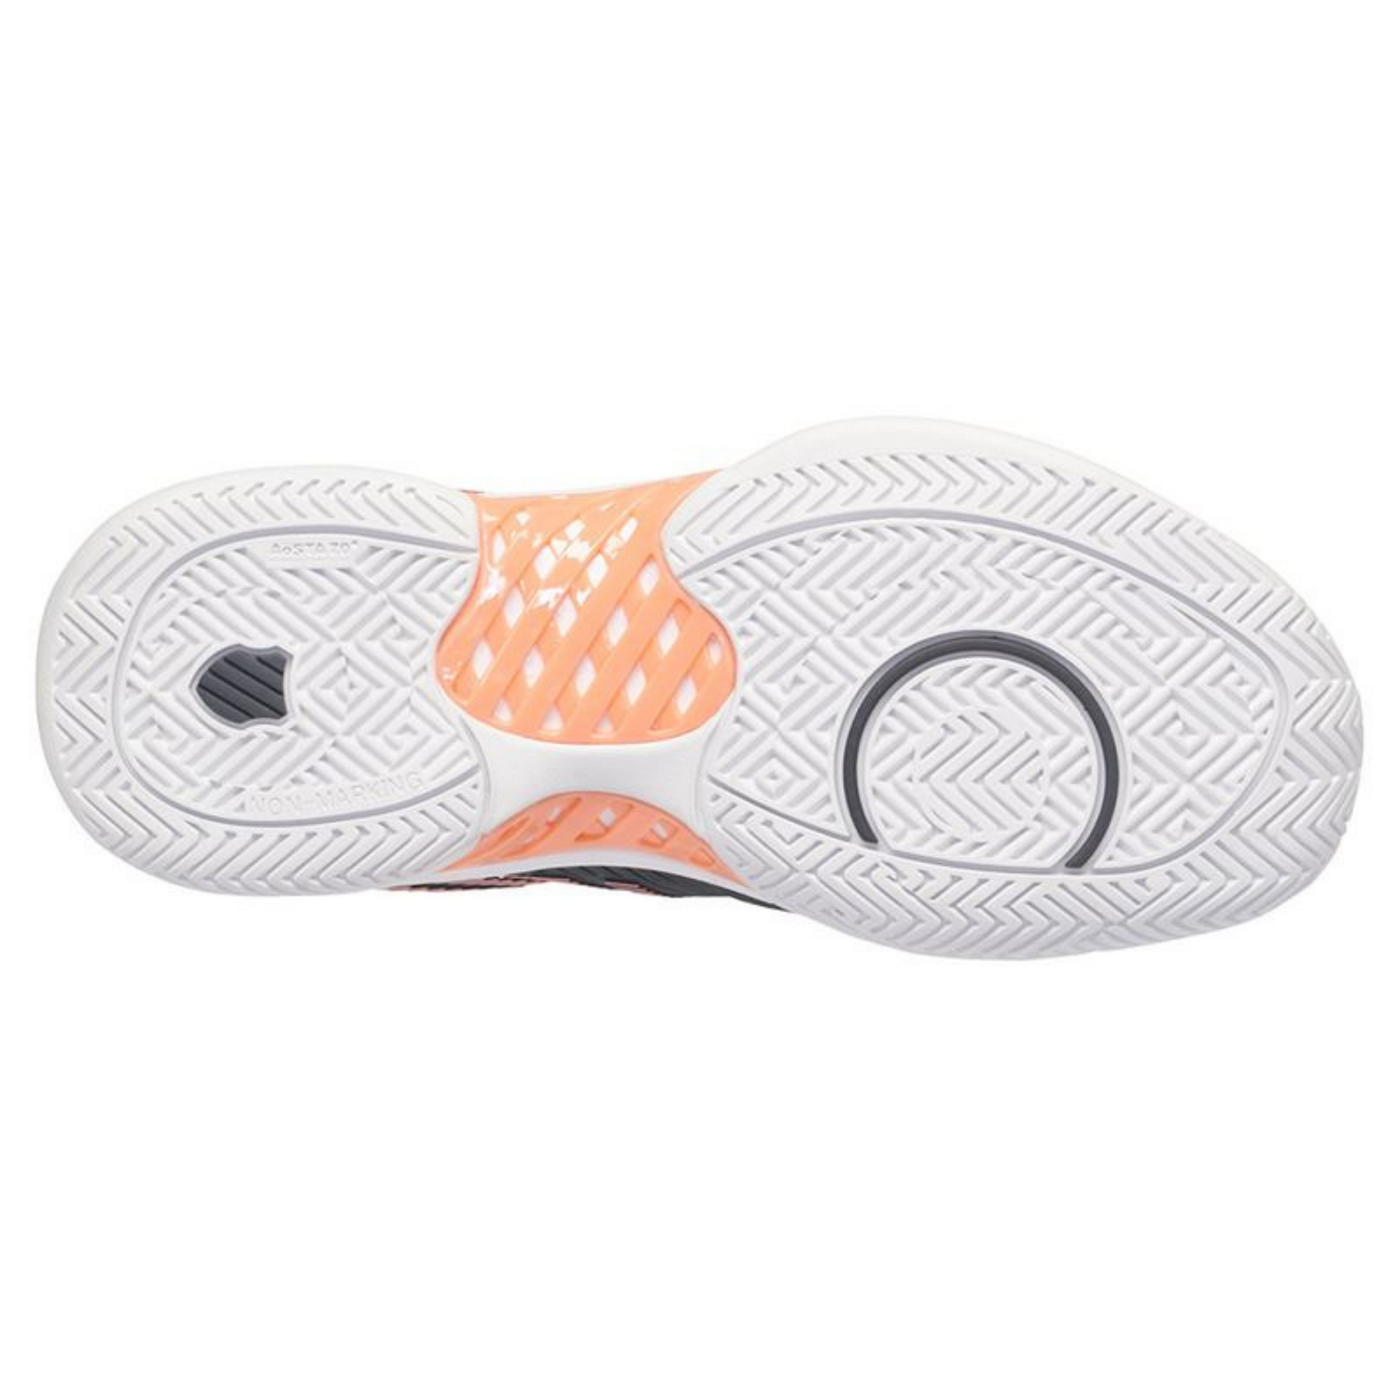 K Swiss Hypercourt Express 2  Women Tennis Shoes -  Asphalt/White/Peach Amber